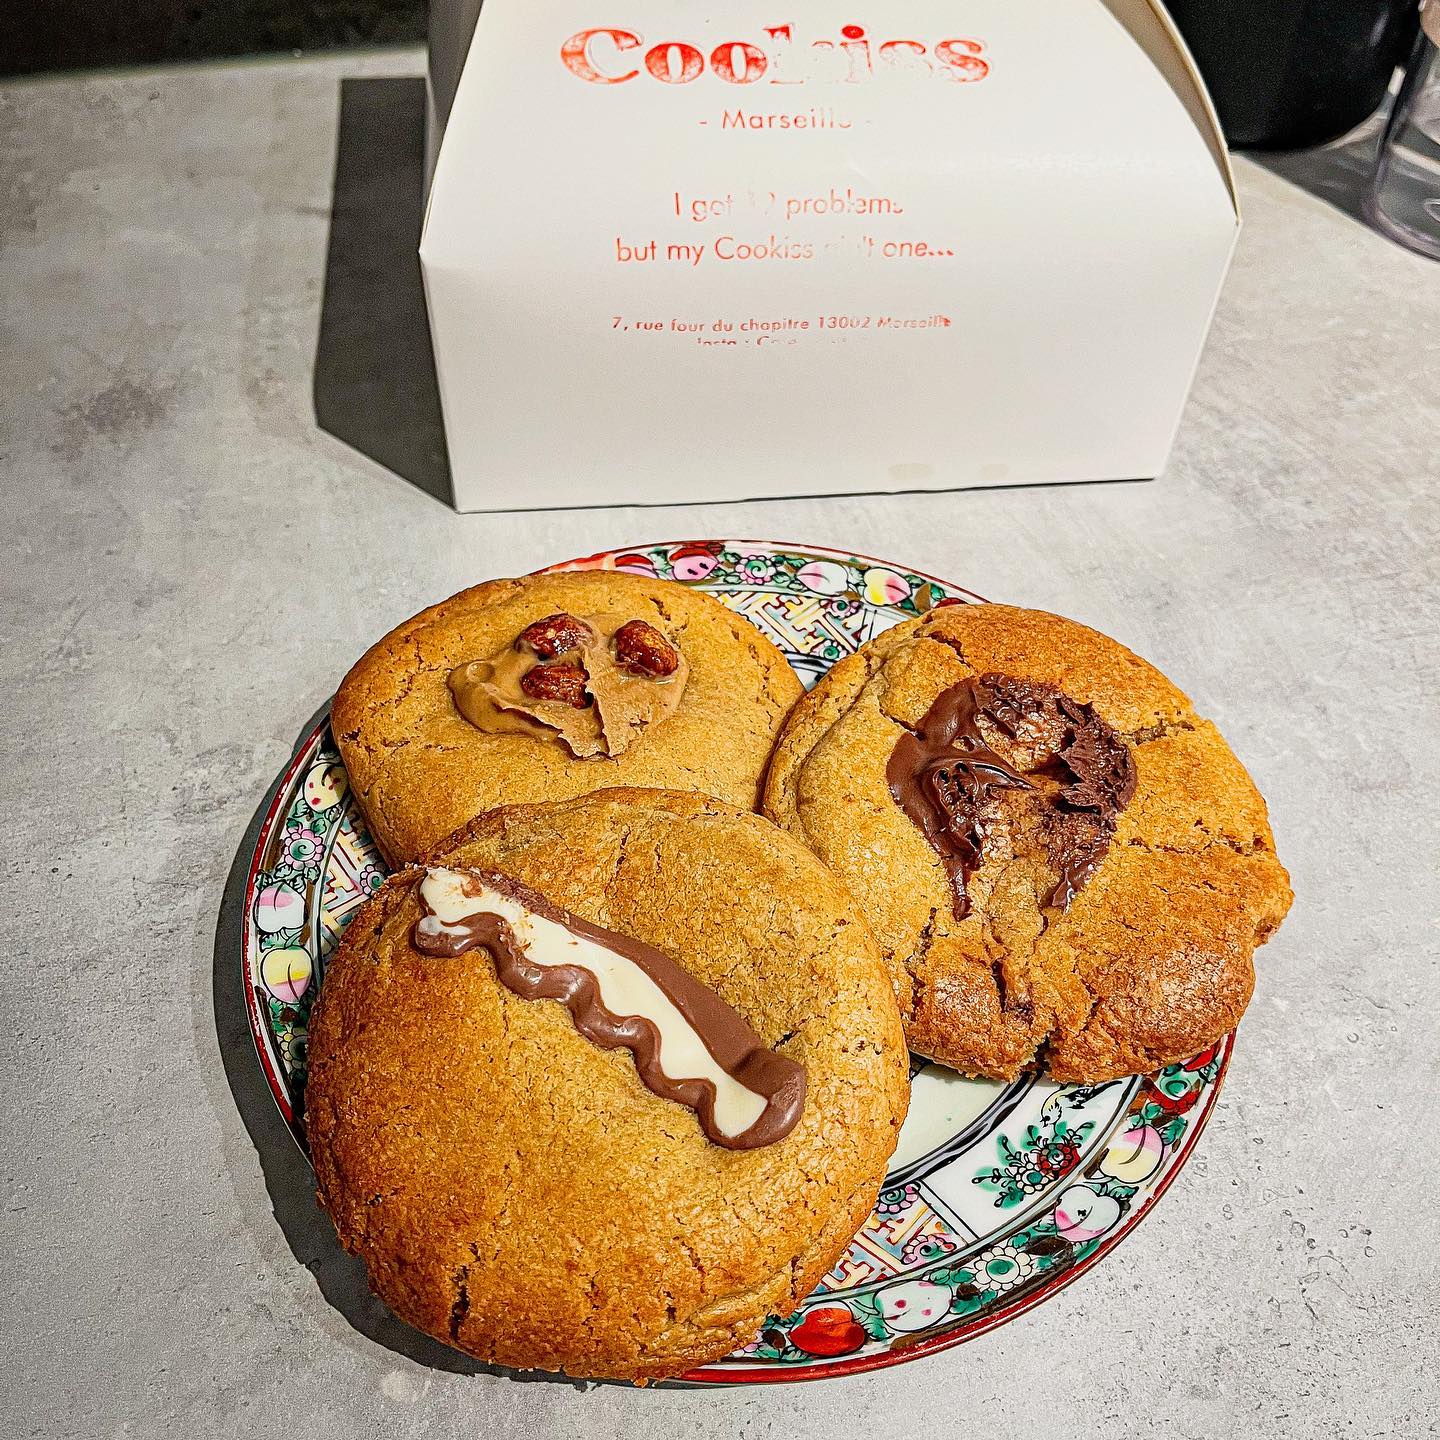 [𝙷𝚎𝚕𝚕𝚘 𝙲𝚘𝚘𝚔𝚒𝚜𝚜 🤭]

Ouvert depuis décembre 2021, @cookiss.shop se situe dans le 2eme arrondissement de Marseille et propose des cookies cuits (normal me direz-vous !) mais aussi (et surtout) de la pâte à cookie crue ! 🍪 

🧑‍🍳 1er laboratoire de pâte à cookie crue du sud de la France. 
🚩 Boutique à la devanture rose et rouge, impossible à louper !
🍪 Cookie sur mesure, en petite quantité, concoctés avec des produits bio. 
💁‍♀️ Accueil chaleureux. 
💰 3,20€ le cookie. 
⭐️ 4,9/5 sur @googlemaps (j’ai mis 5).
🗺 Lieu enregistrer sur ma carte @mapstr. 

————————————————————

#cuisine #cuisinemoi #marseille #restaurantmarseille #boutiquemarseille #cookie #cookies #cookiesmarseille #marseille #marseillefood #cookiss #joliette #cuisine #pateacookie #igers #igersmarseille